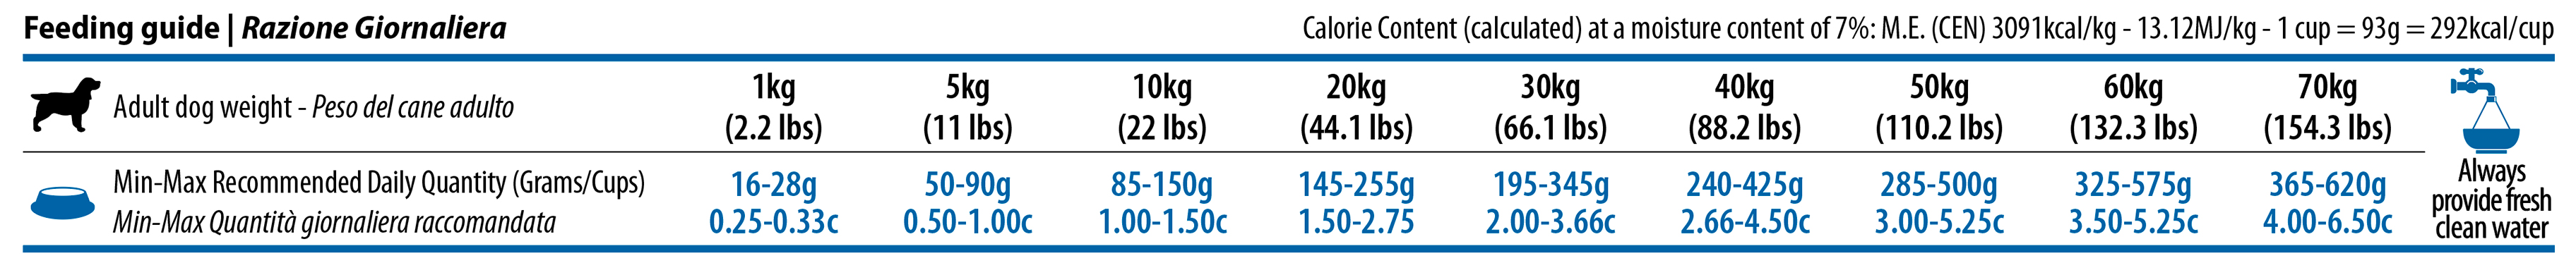 444_12_quinoa-weight-management-all-breeds-2,5kg-feeding-guide.jpg